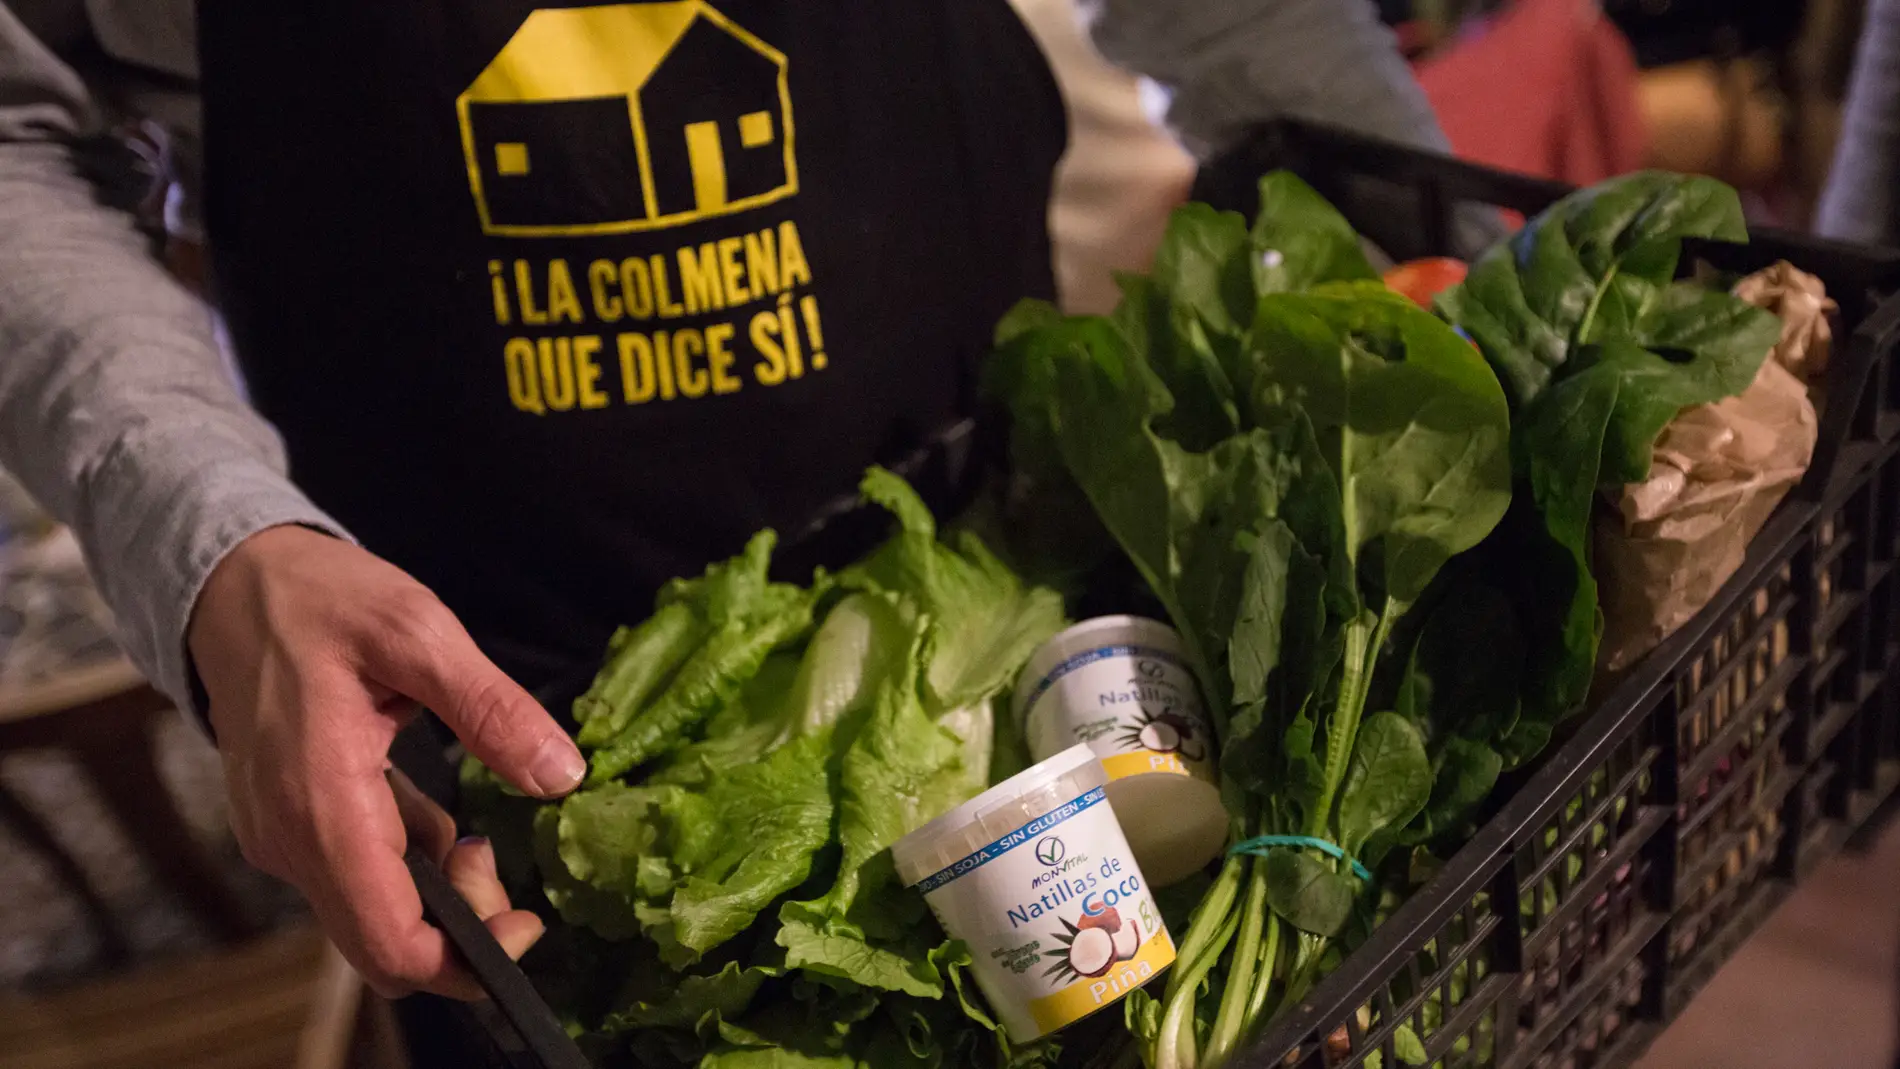 ¡La colmena que dice sí!, una iniciativa para acercar productos locales a los consumidores sin intermediarios